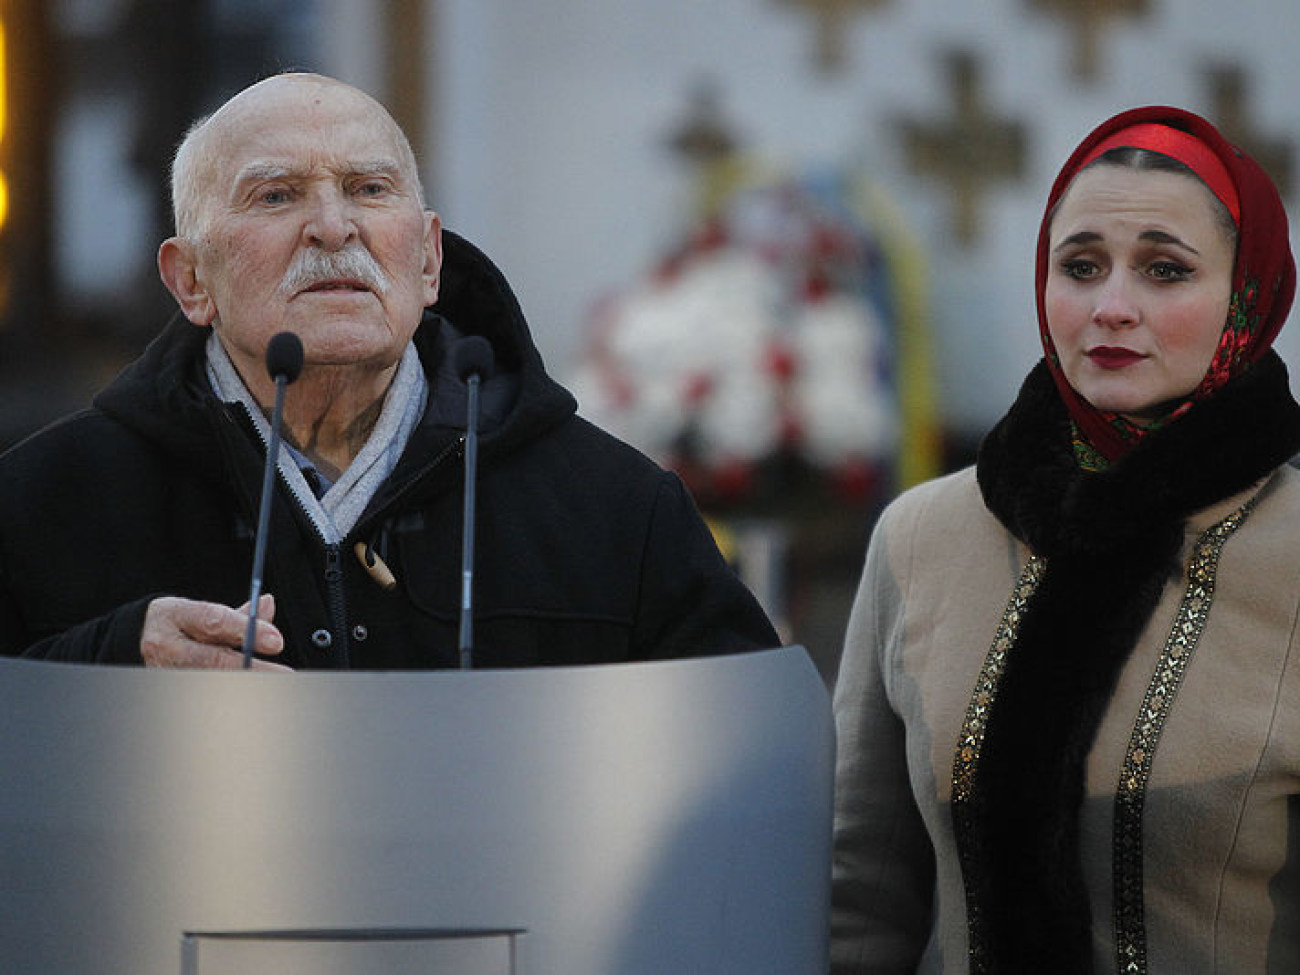 Украинцы вспоминают жертв Голодомора